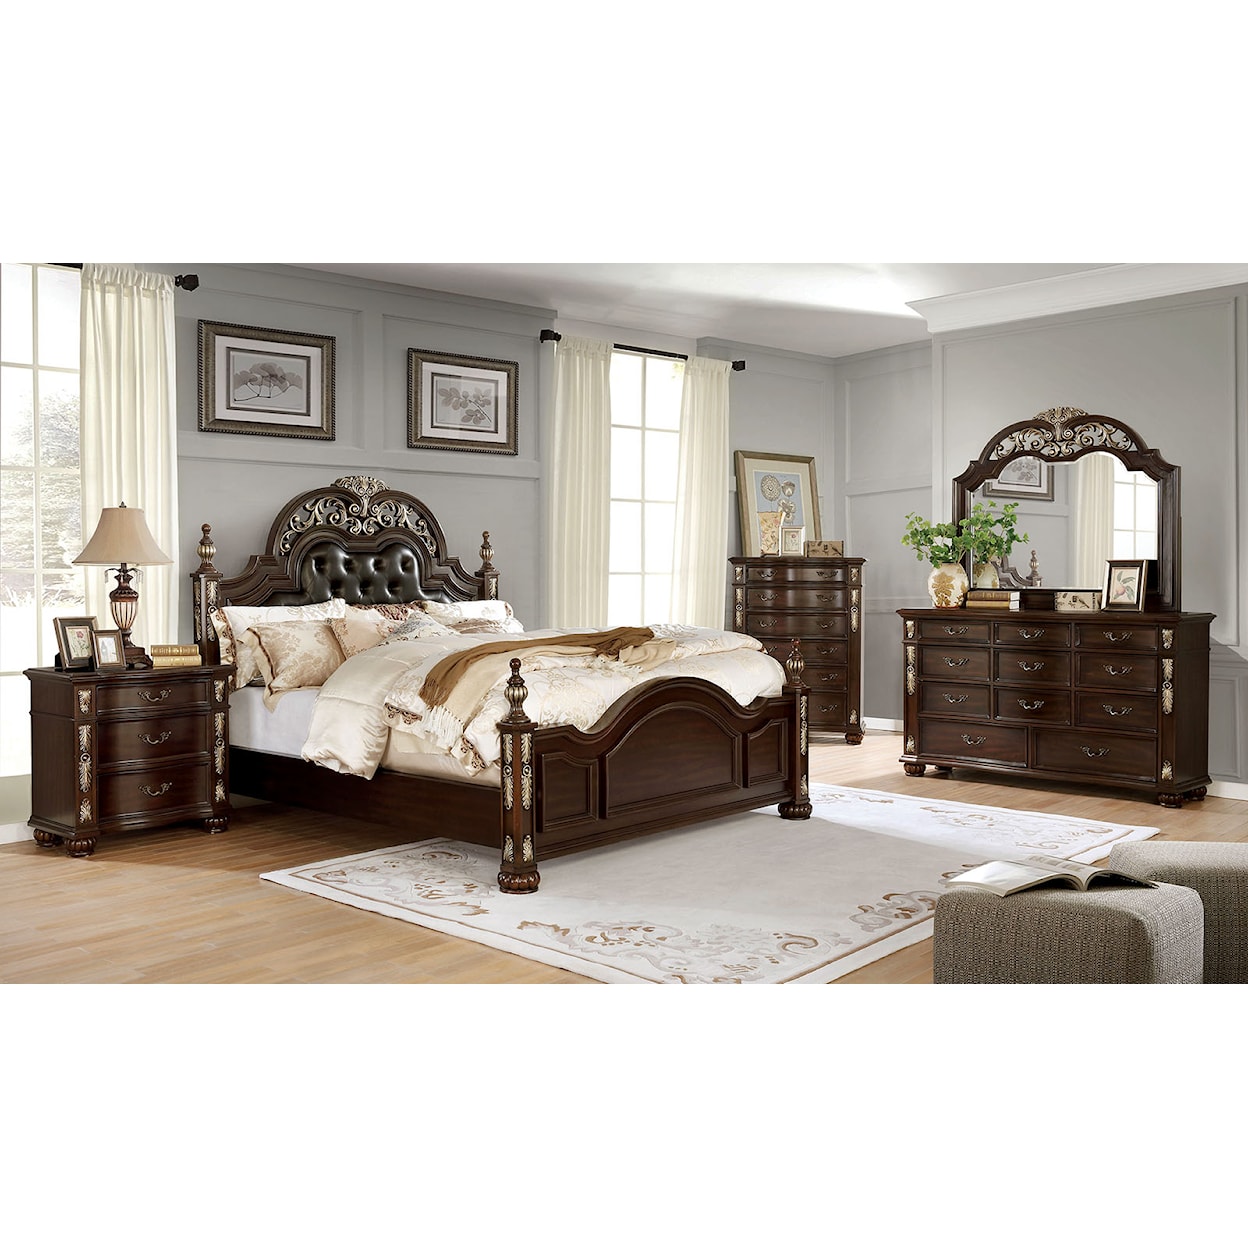 Furniture of America Theodor Queen Bedroom Group 